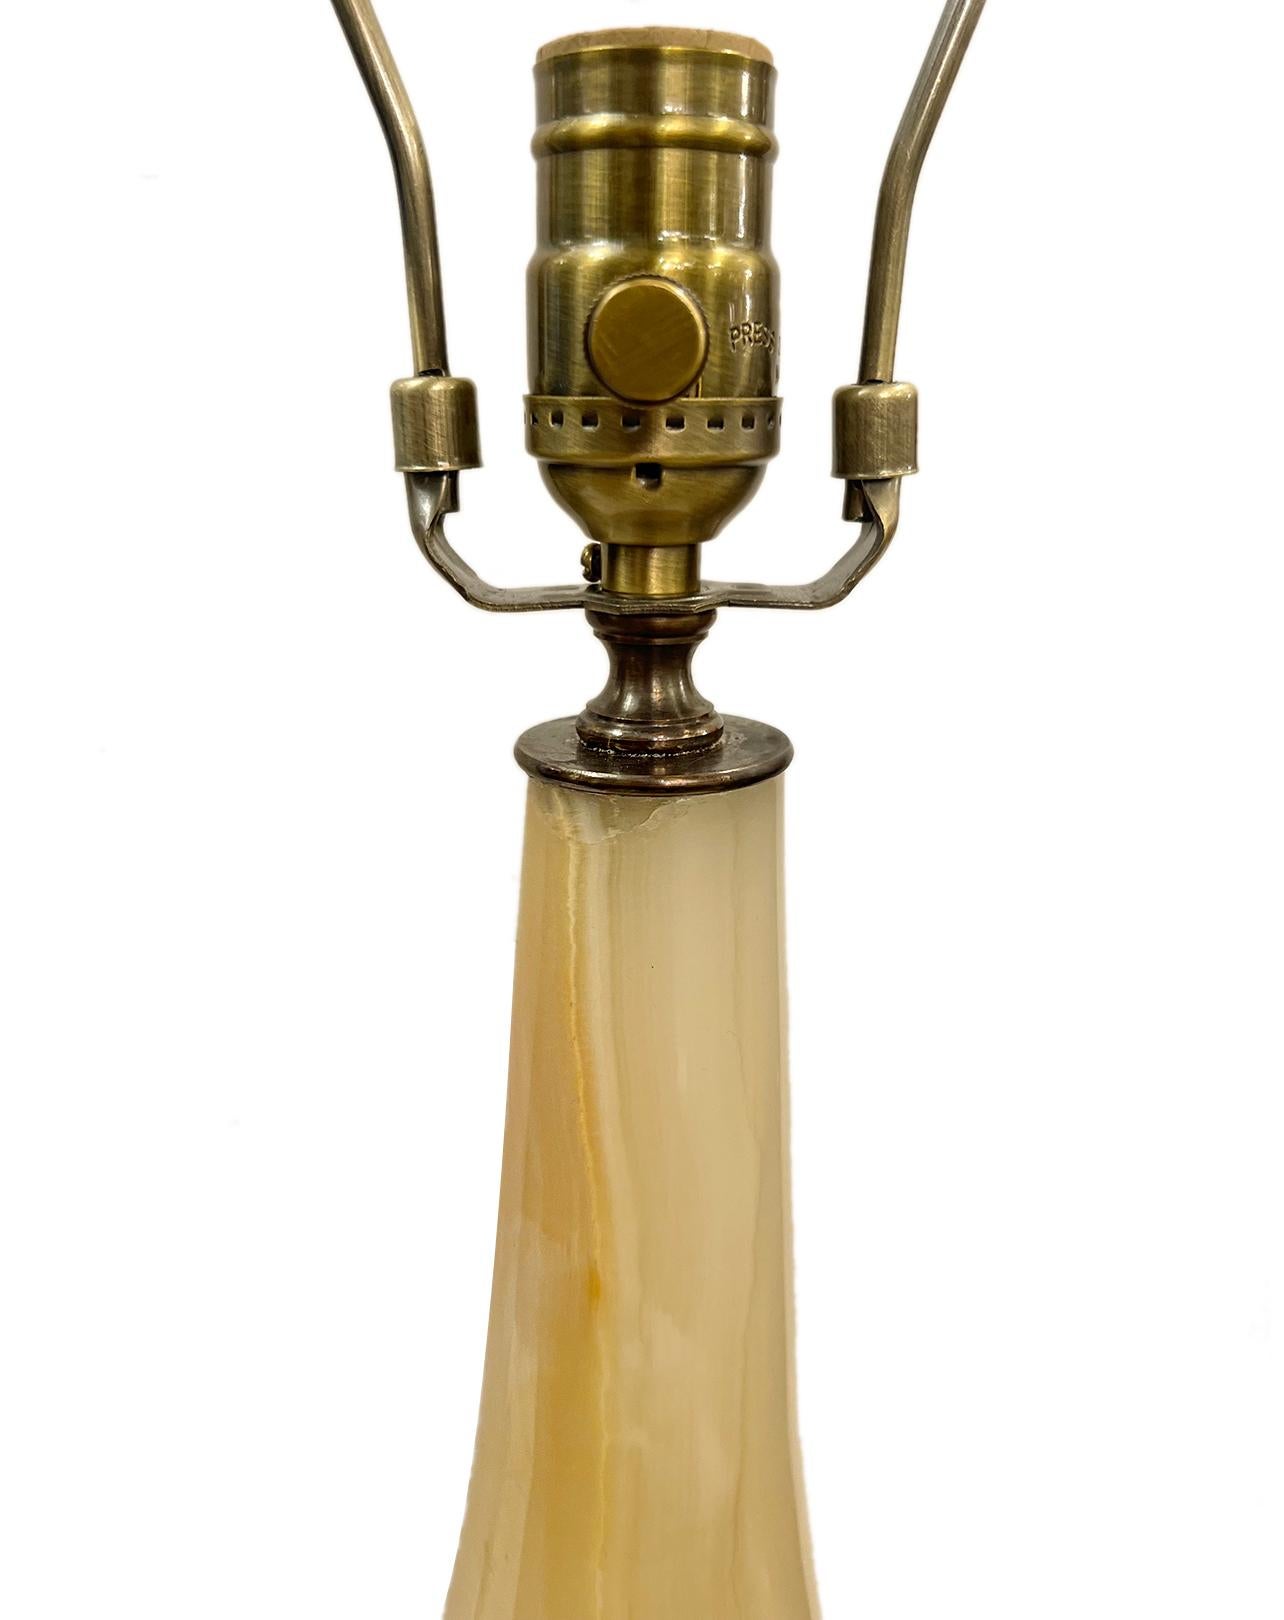 Paire de lampes colonnes italiennes en onyx datant des années 1920.

Mesures :
Hauteur du corps : 20